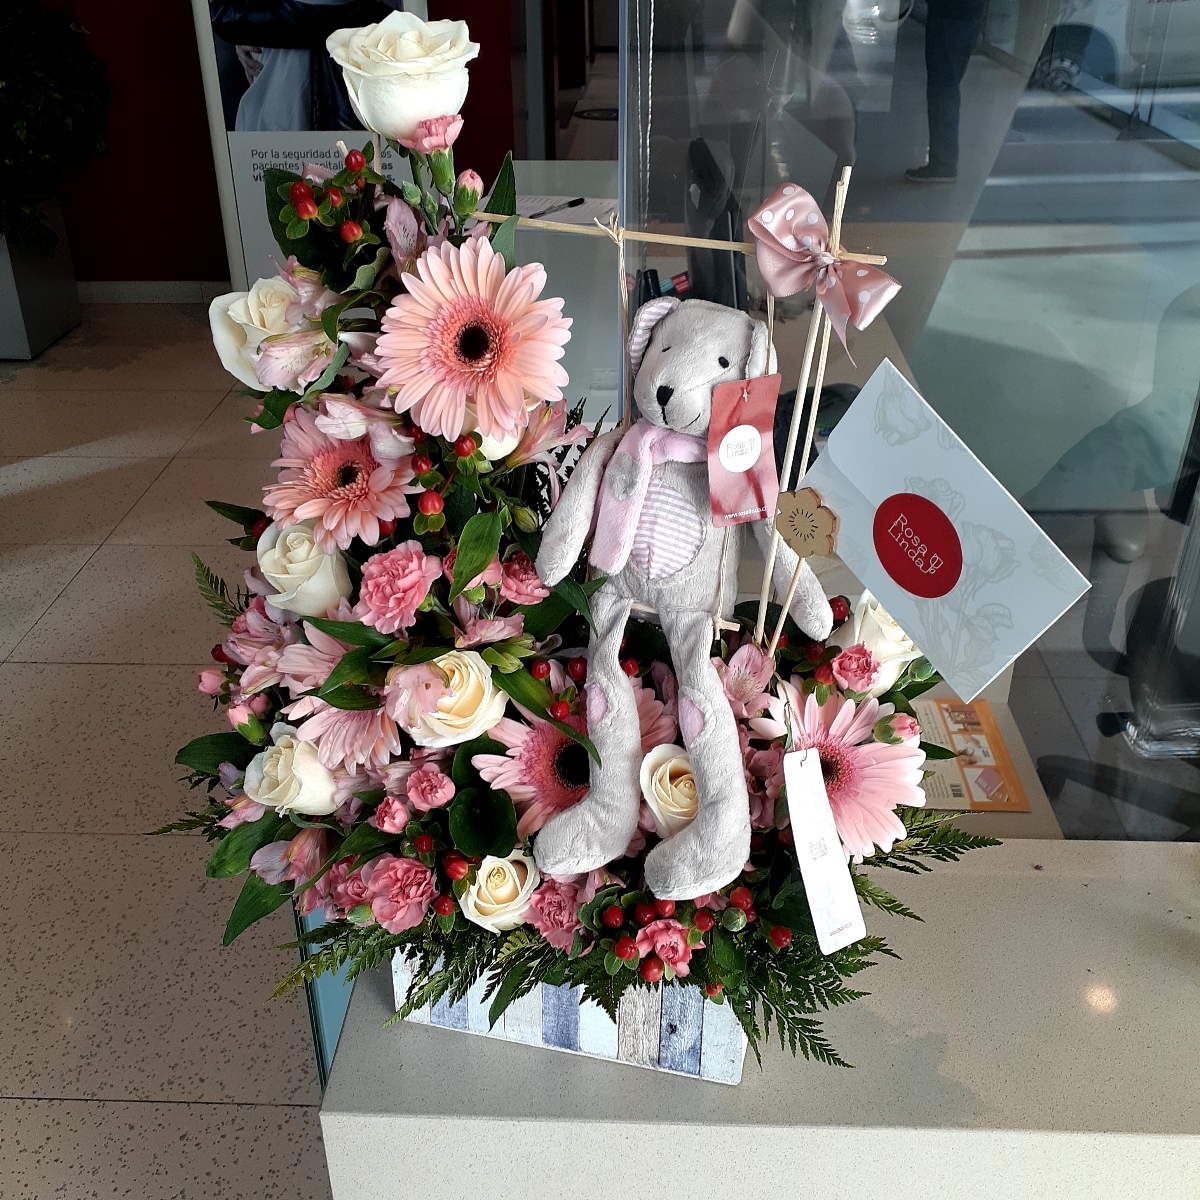 Osita en el jardín - Arreglo floral de nacimiento con peluche de osita en tonos blancos y rosados - Pedido 254188